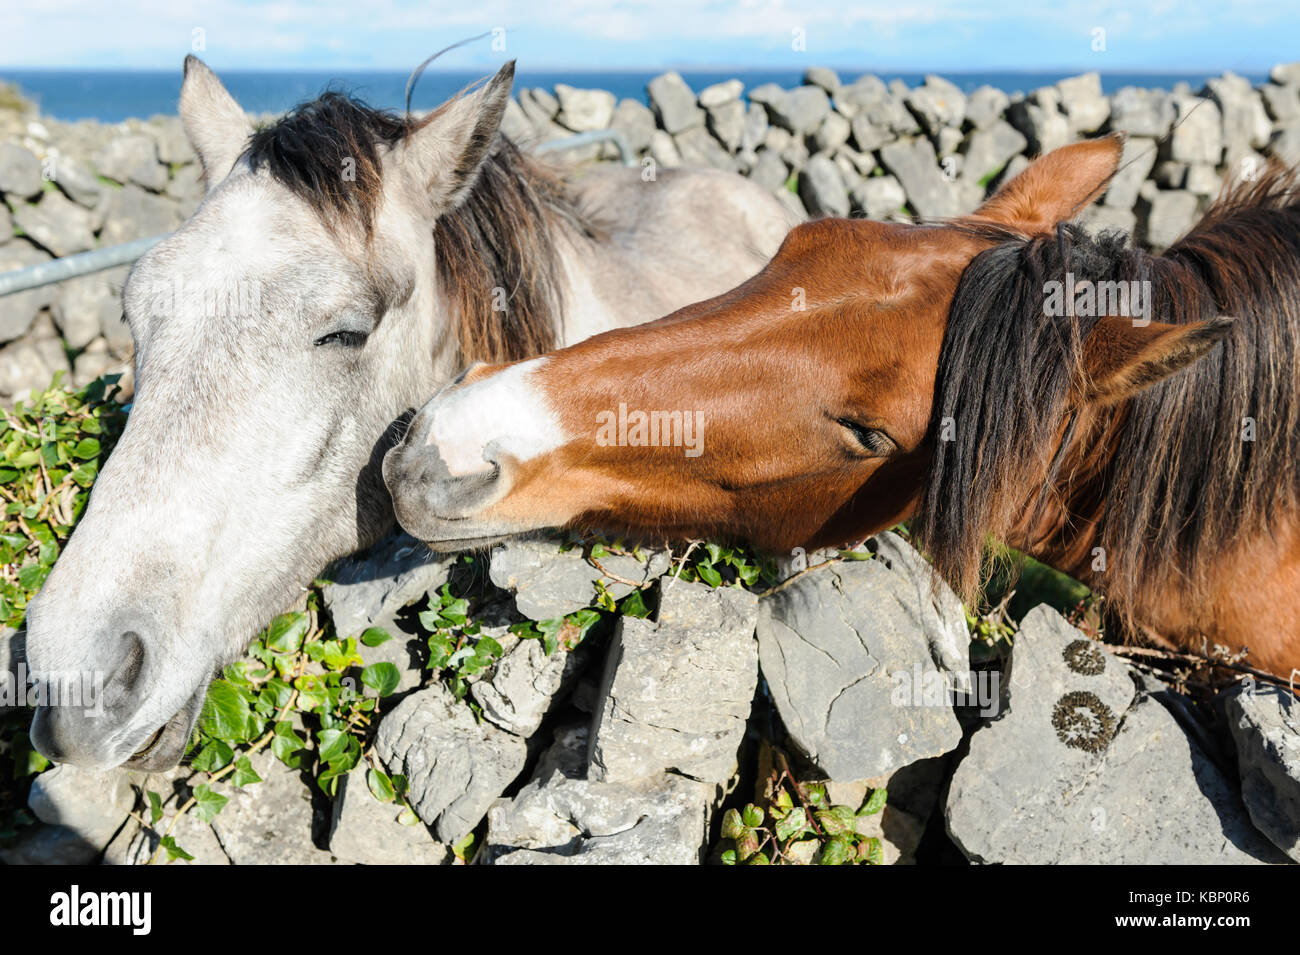 Deux chevaux s'embrasser dans les îles d'Aran, en Irlande, à proximité de galway, montrant que l'amour est un sentiment aussi disponible dans le monde animal. Banque D'Images